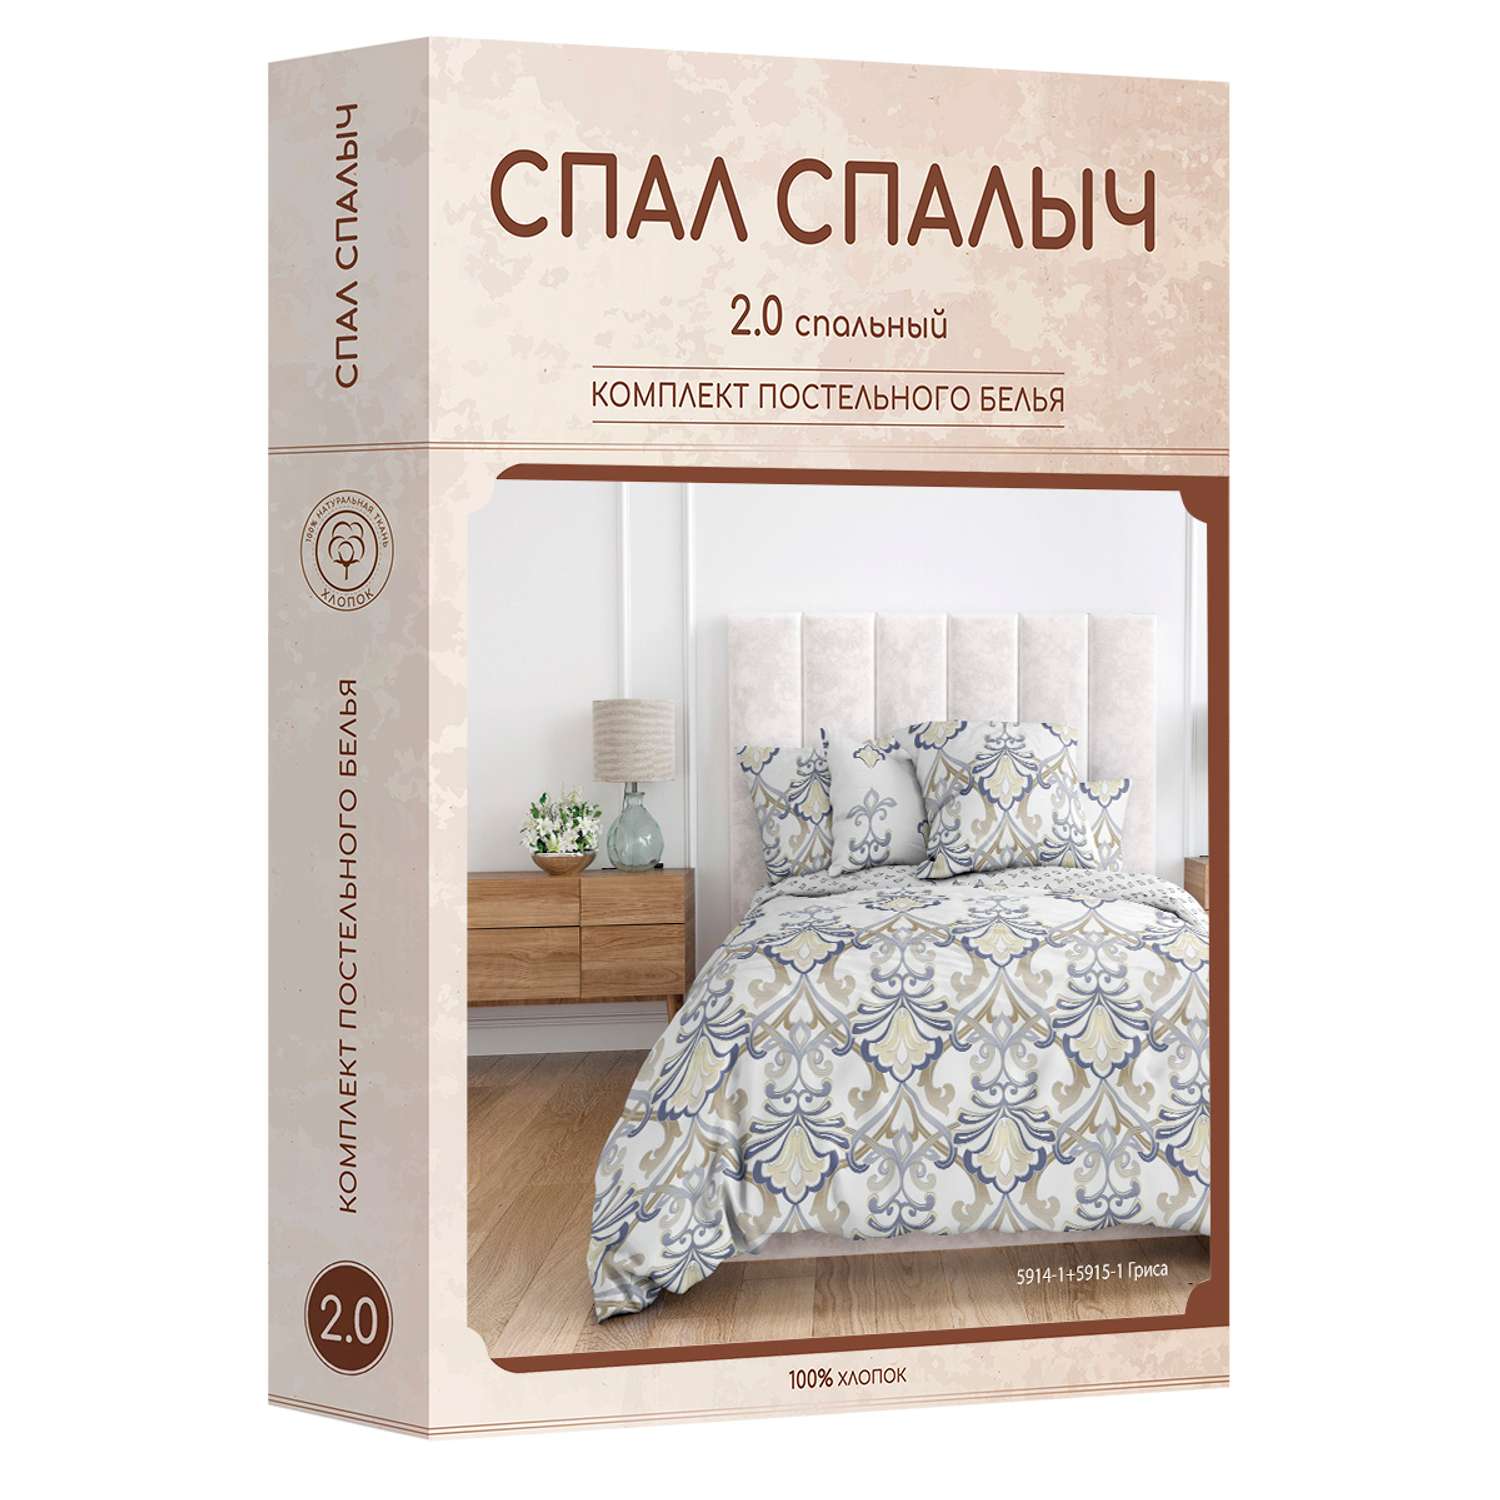 Комплект постельного белья Спал Спалыч Гриса 2-спальный макси - фото 9